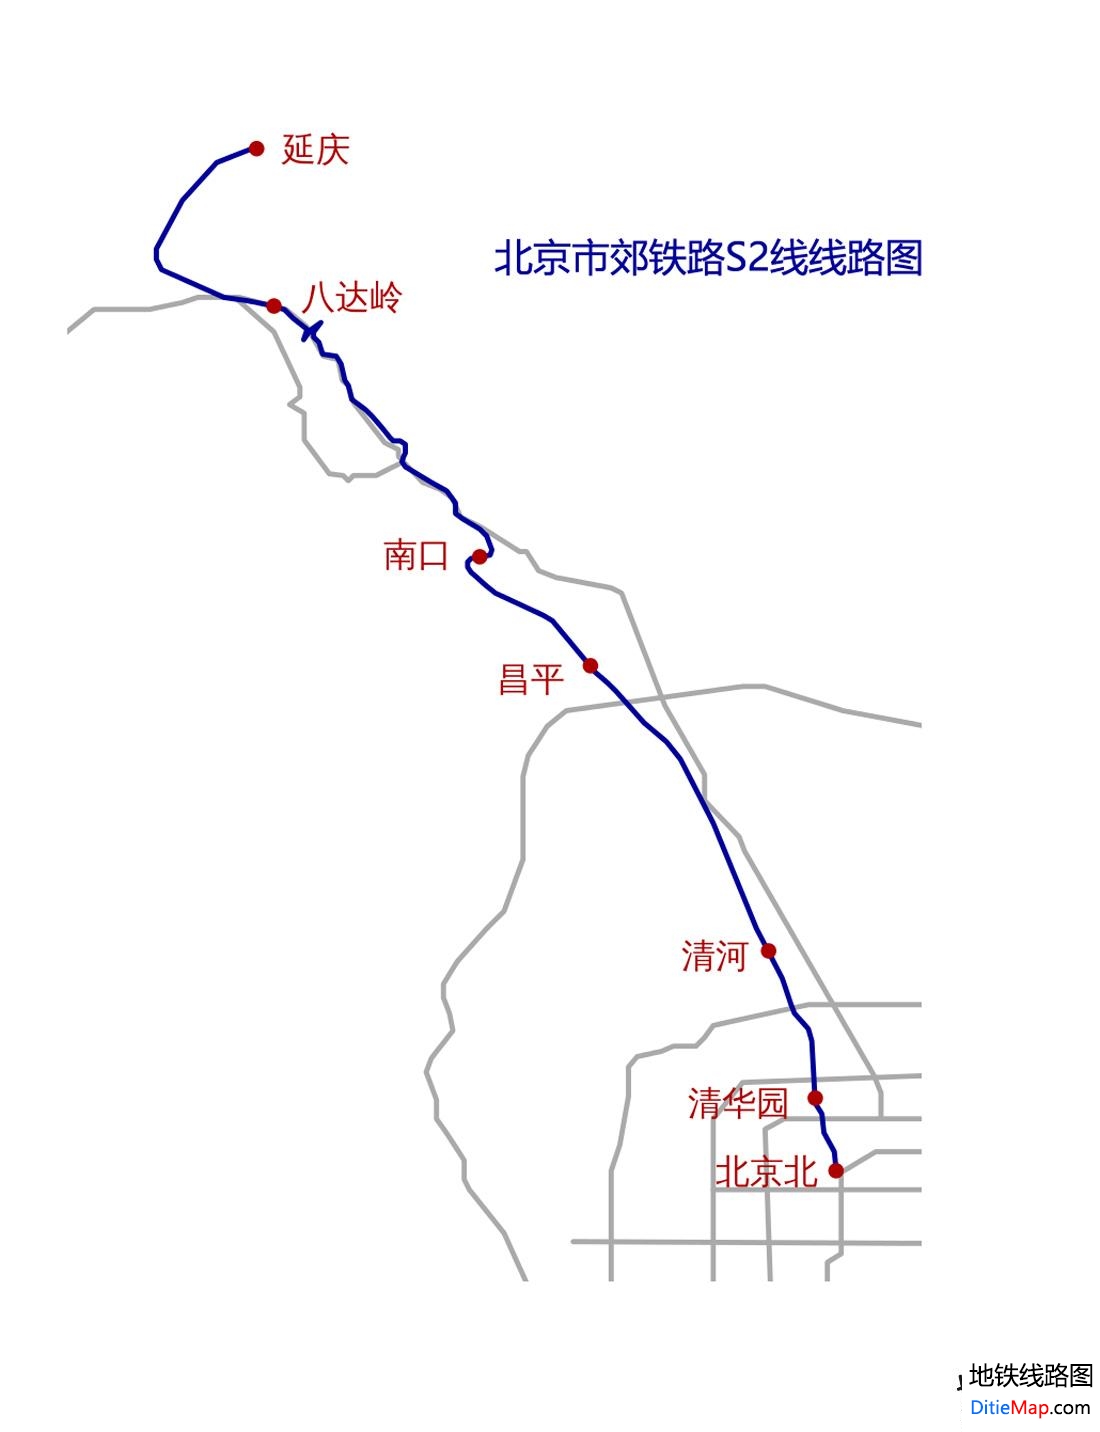 北京地铁(城铁)S2号线线路图 运营时间票价站点 查询下载 北京地铁S2线查询 北京地铁S2线运营时间 北京地铁S2线线路图 北京市郊铁路S2线 北京地铁S2线 北京地铁线路图  第2张